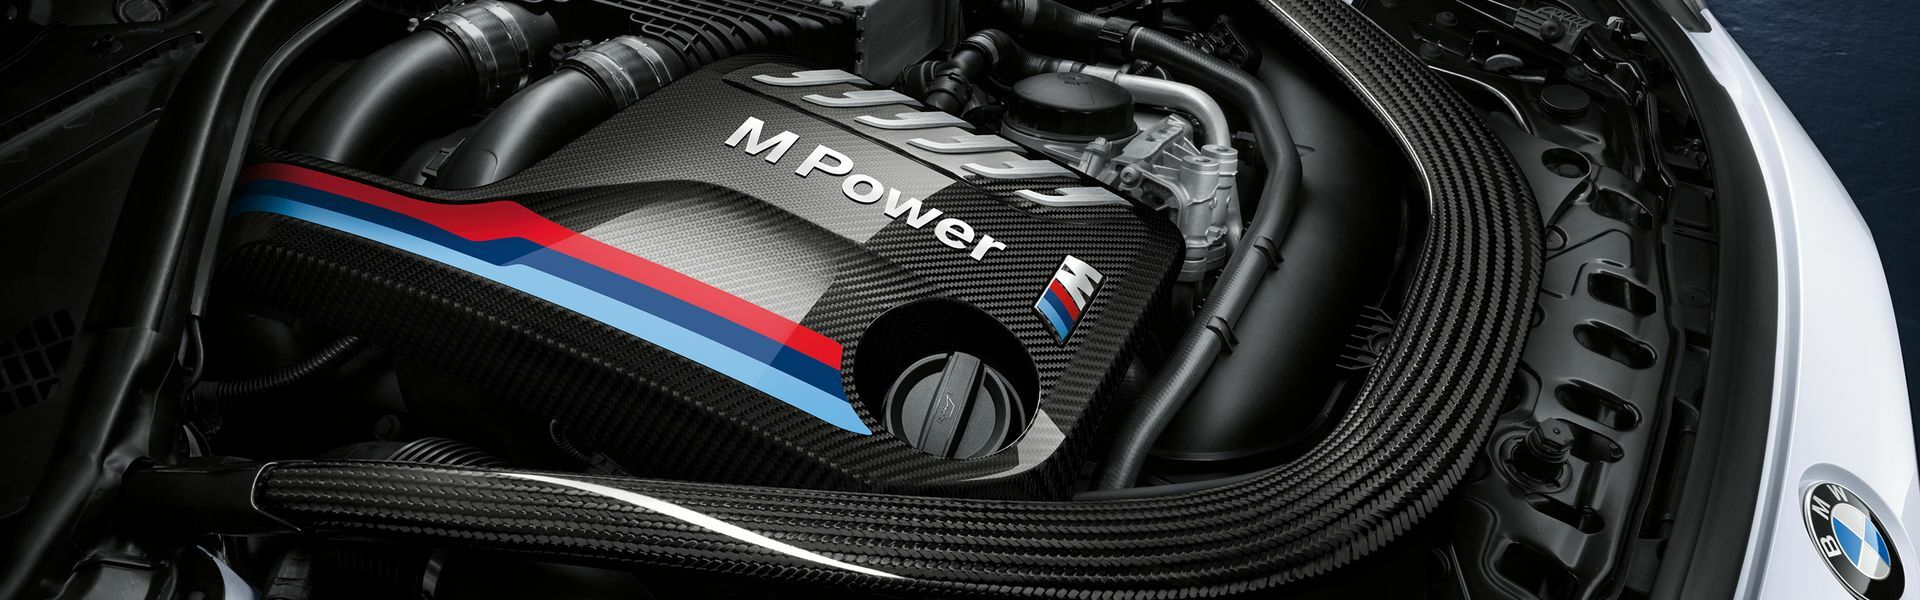 Zvýšení výkonu/ Softwarové úpravy/ Drobné performance díly pro automobil Porsche 911 Turbo / Turbo S 991.2